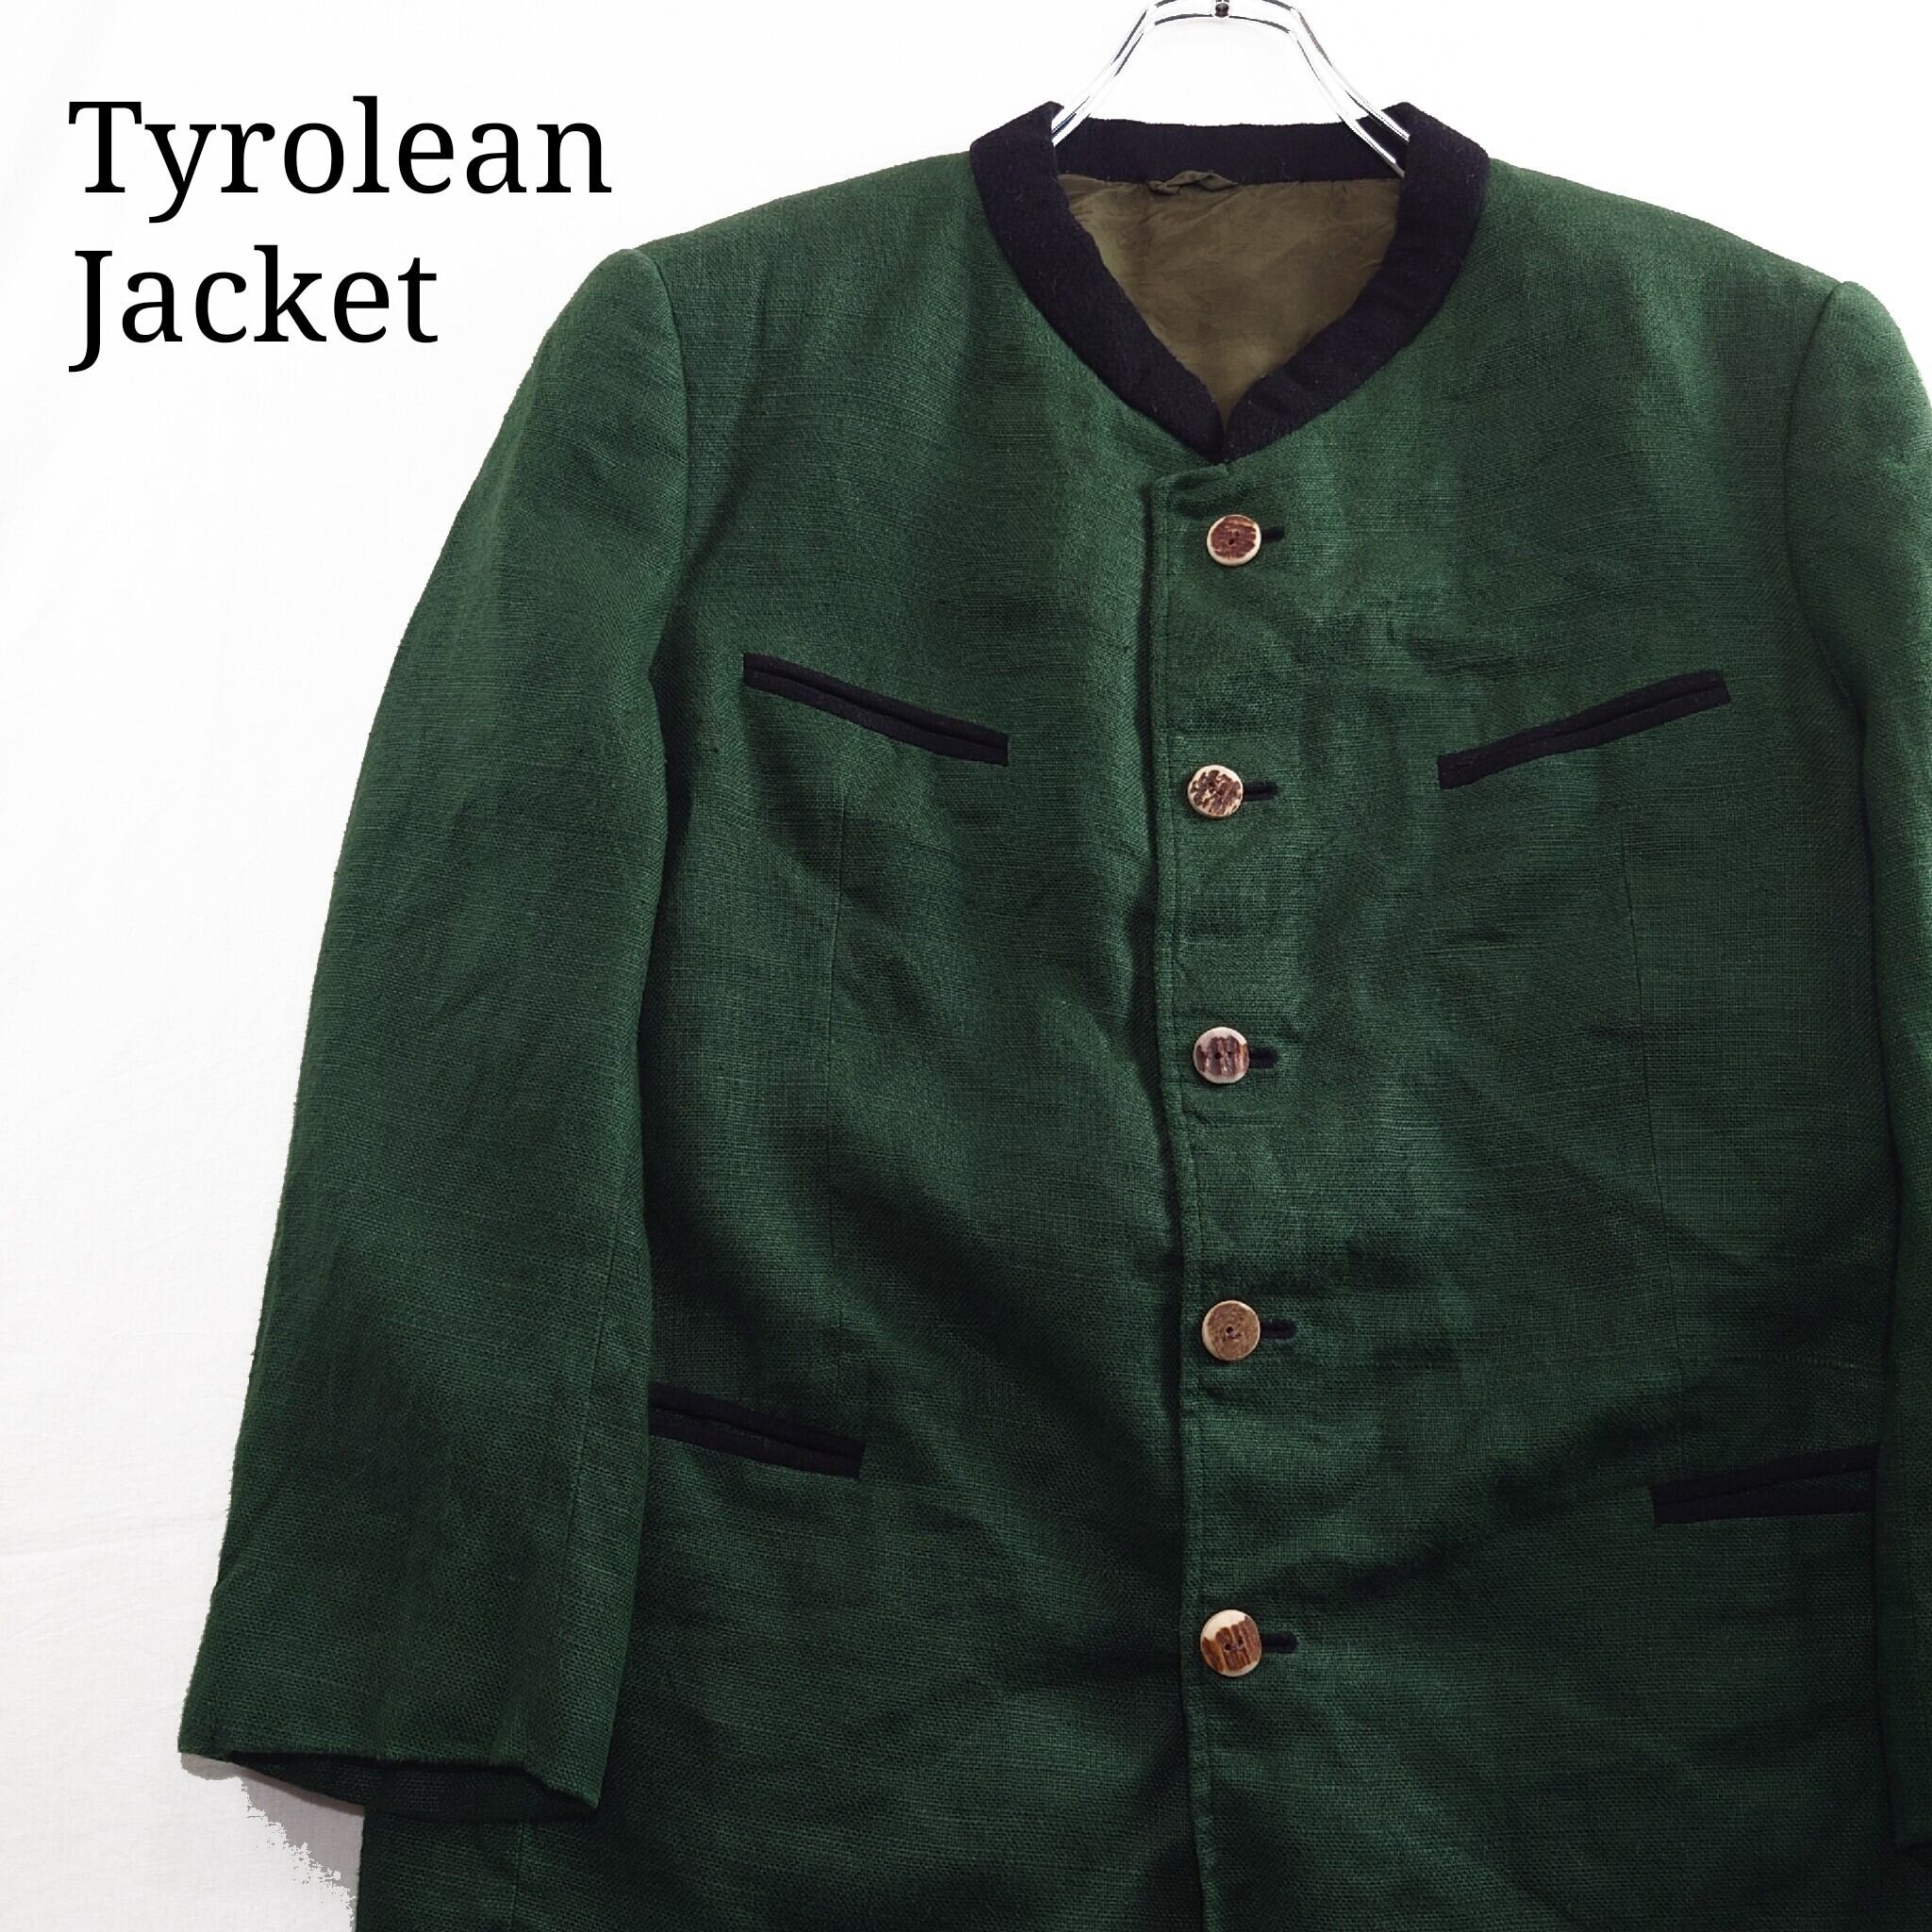 ●イタリア製 ノーカラー ウールジャケット チロリアンジャケット